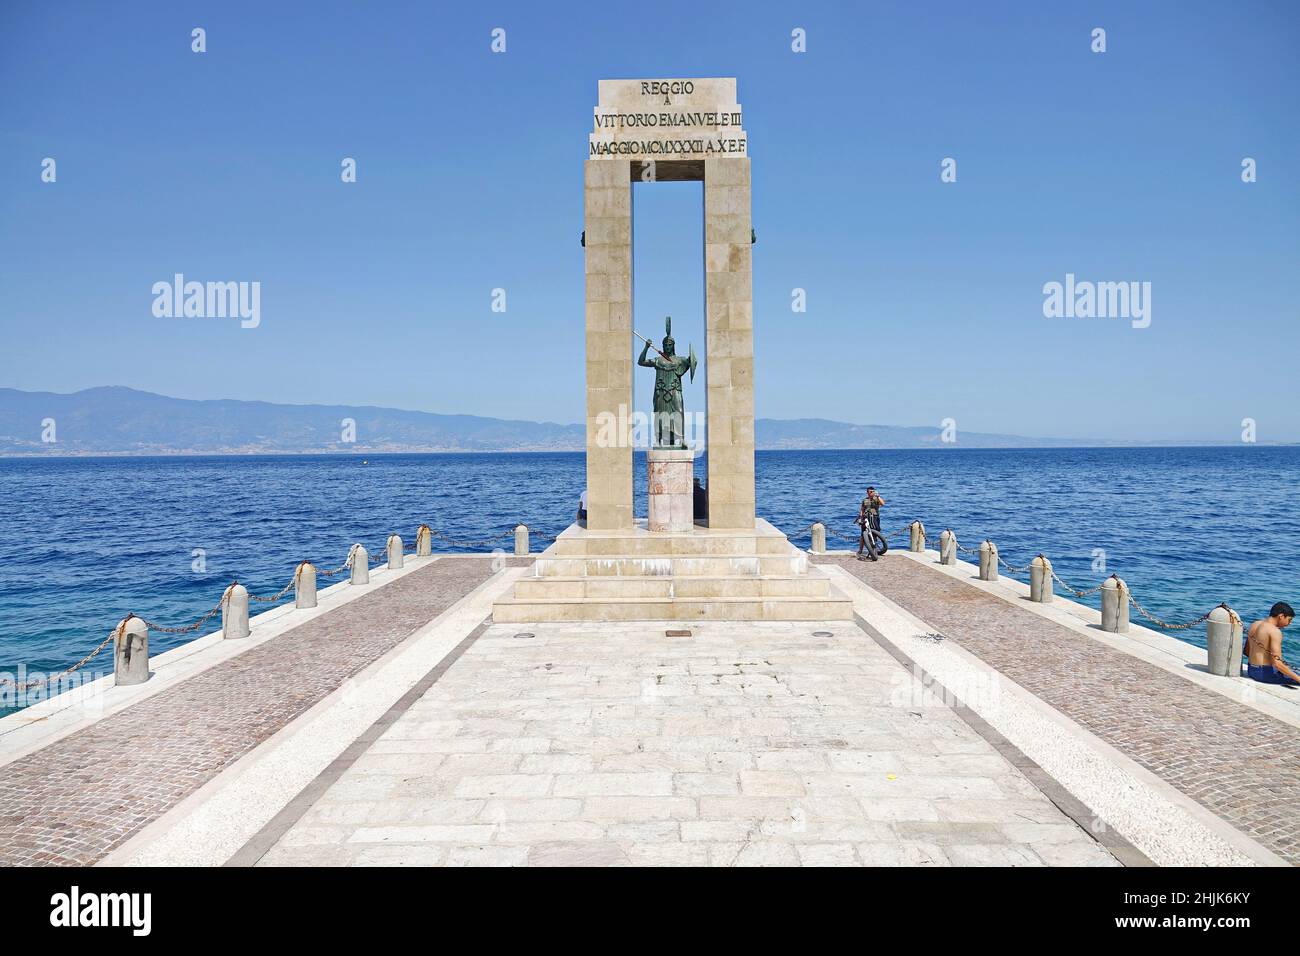 Statue der Göttin Athene und Denkmal für Vittorio Emanuele in der Arena dello Stretto in Reggio Calabria, Italien. Reggio Calabria, Italien - Juli 2021 Stockfoto